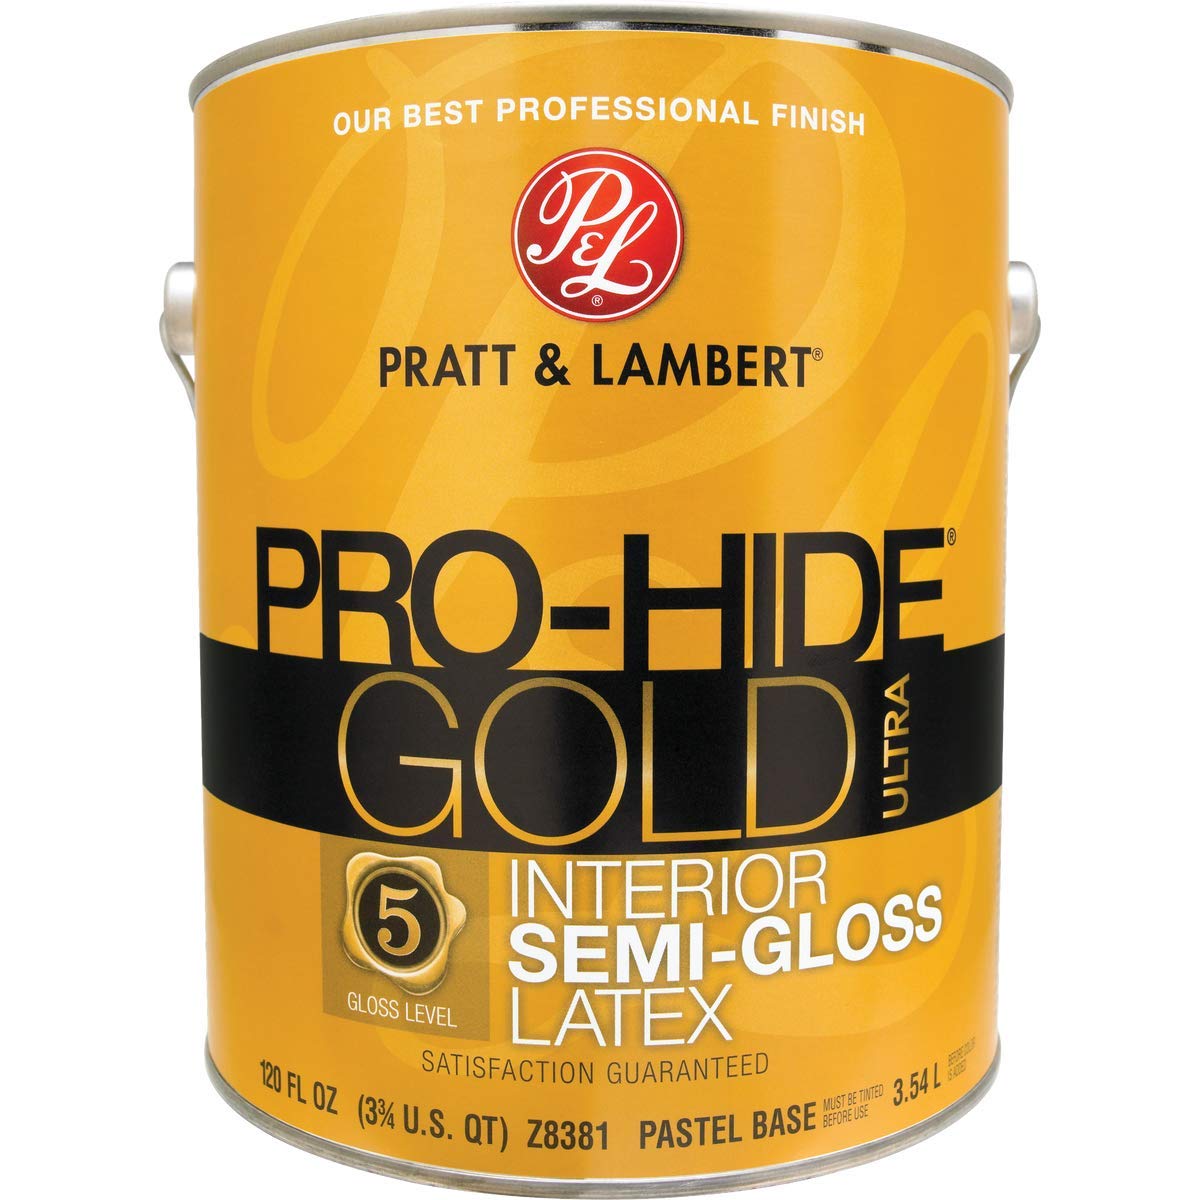 Pratt & Lambert Pro-Hide Gold Ultra Latex Semi-Gloss Interior Wall Paint